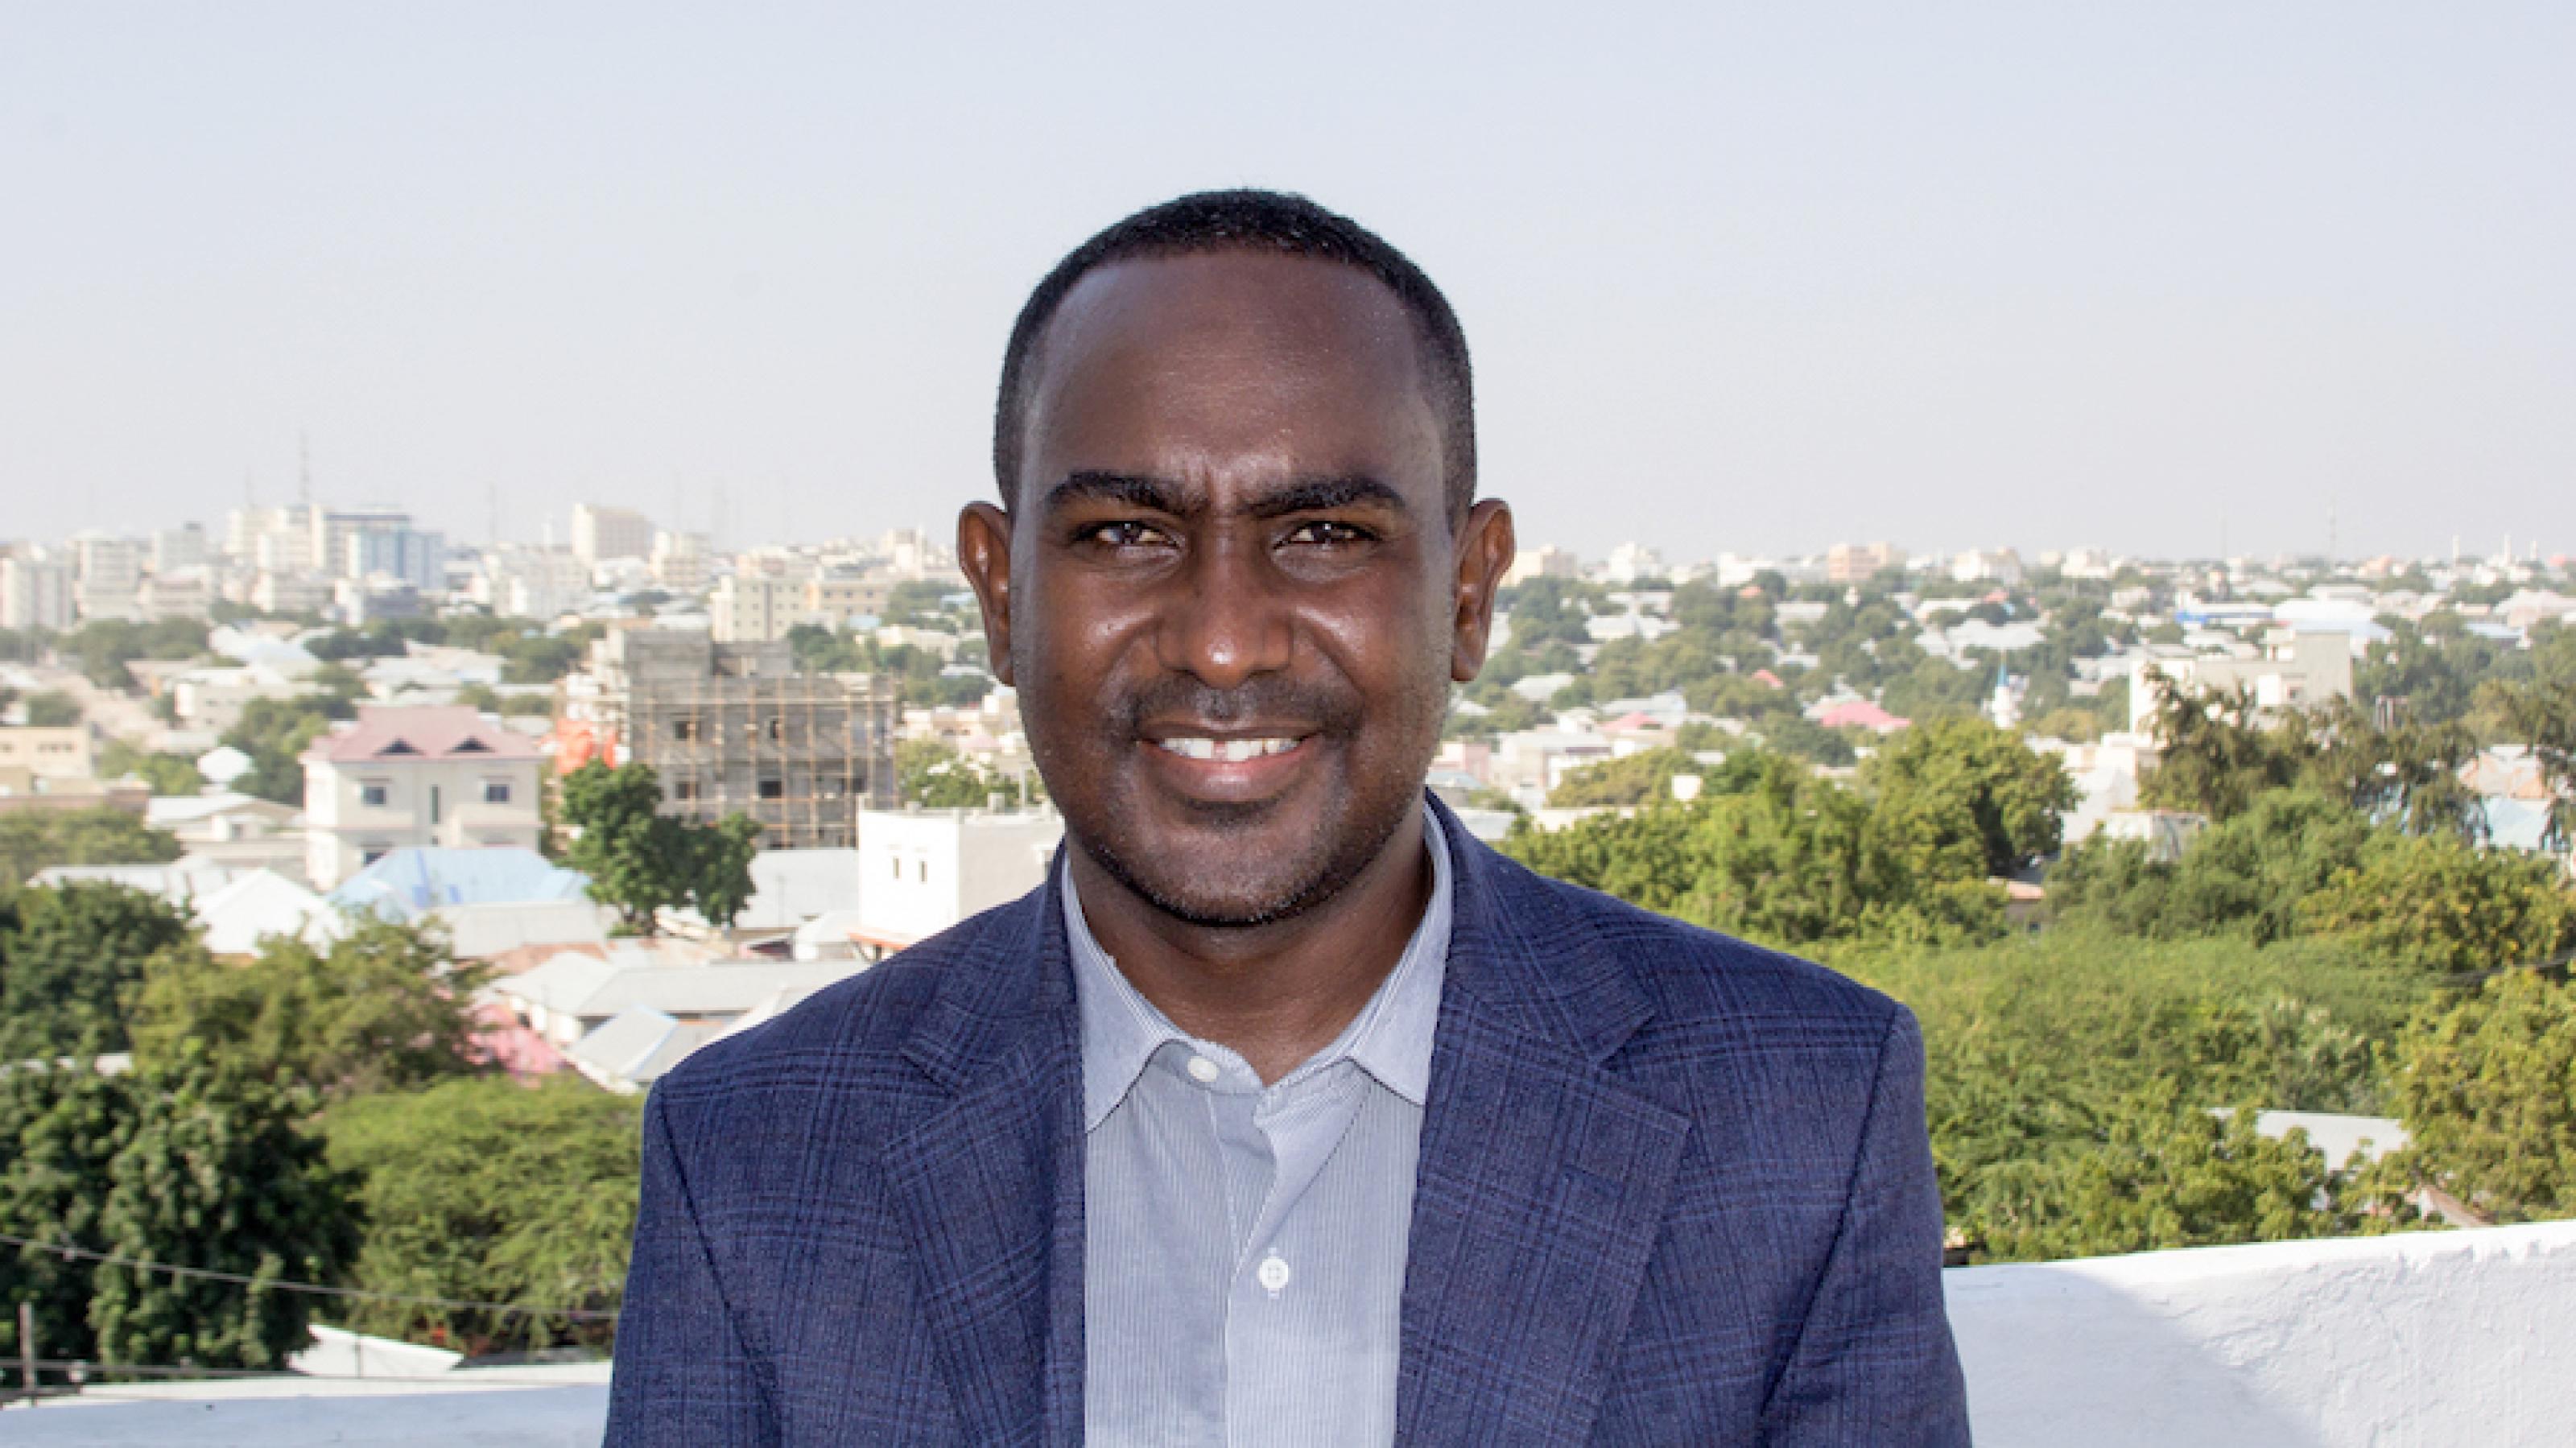 Ein Porträtfoto des Journalisten, er trägt einen Anzug, hinter ihm ist Mogadishu zu sehen